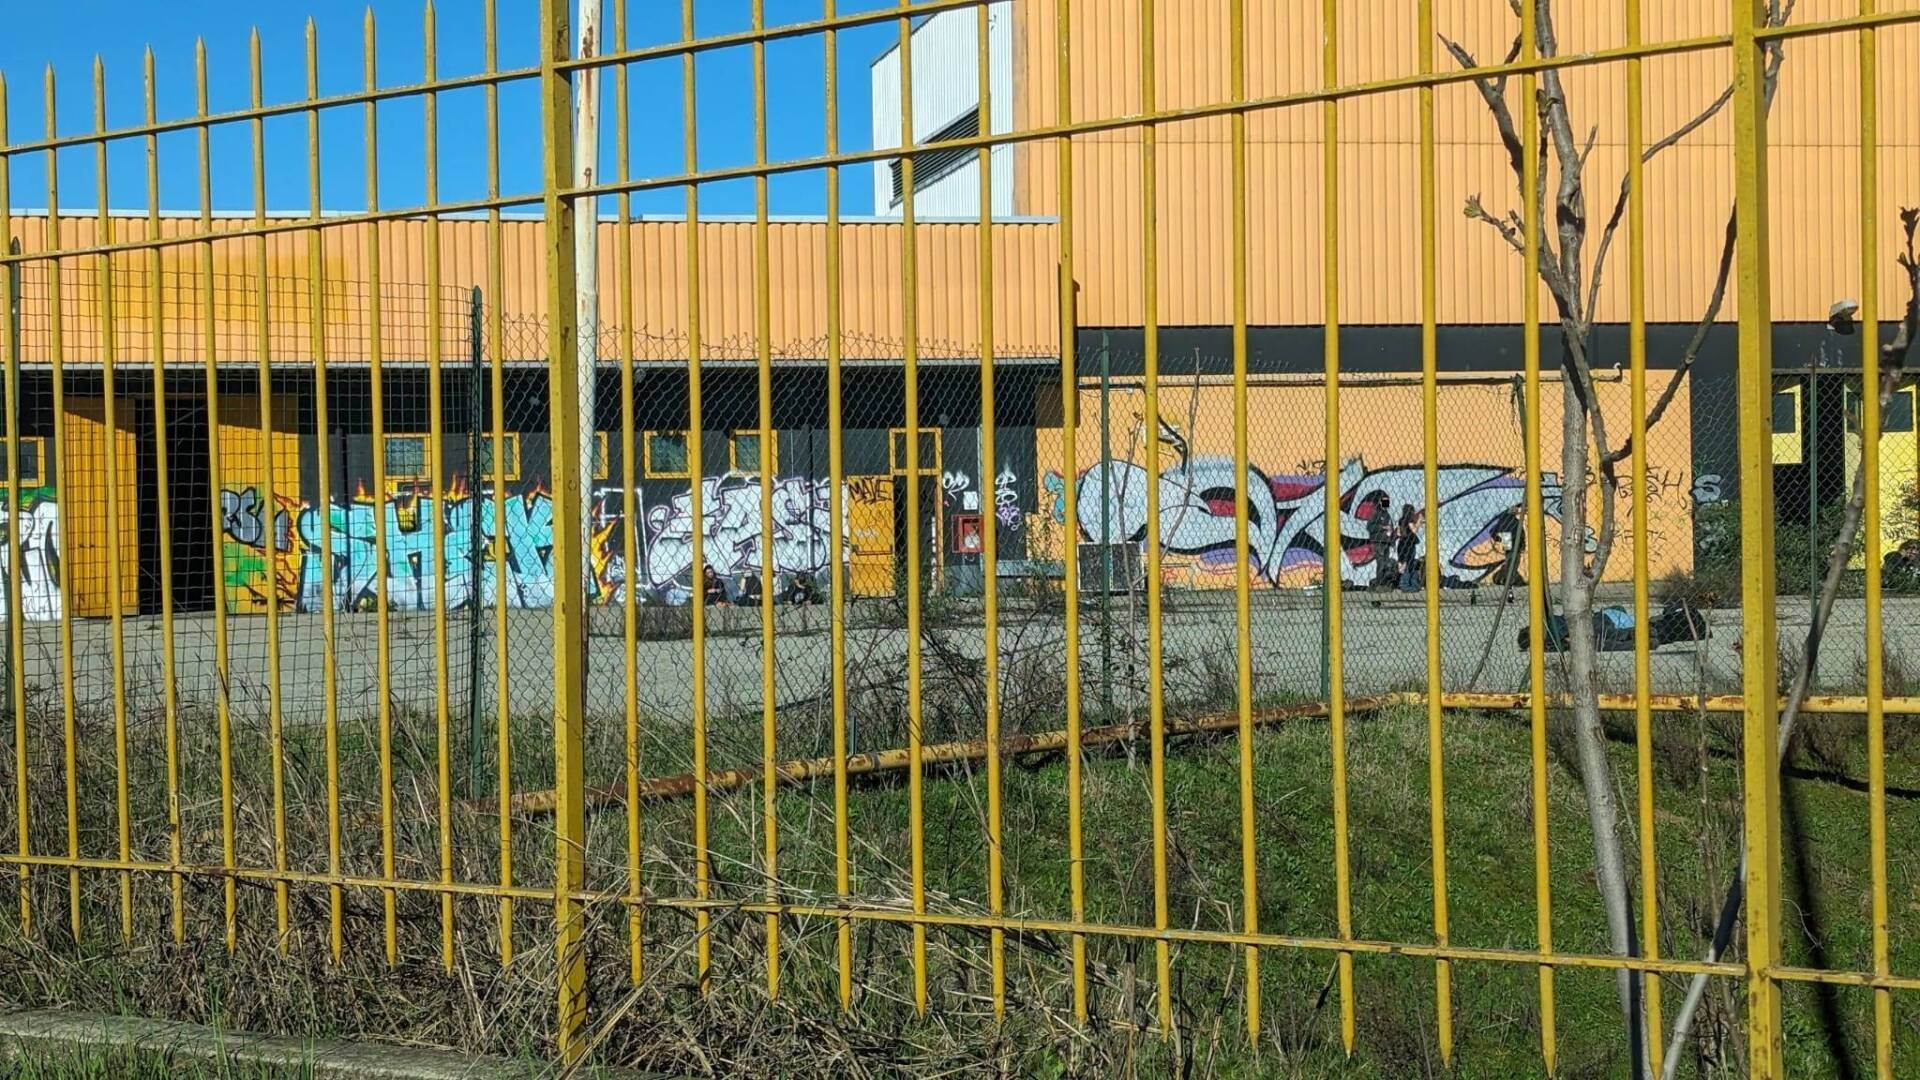 Via ragazzi e striscioni restano solo i graffiti: “liberata” l’ex Lazzaroni occupata